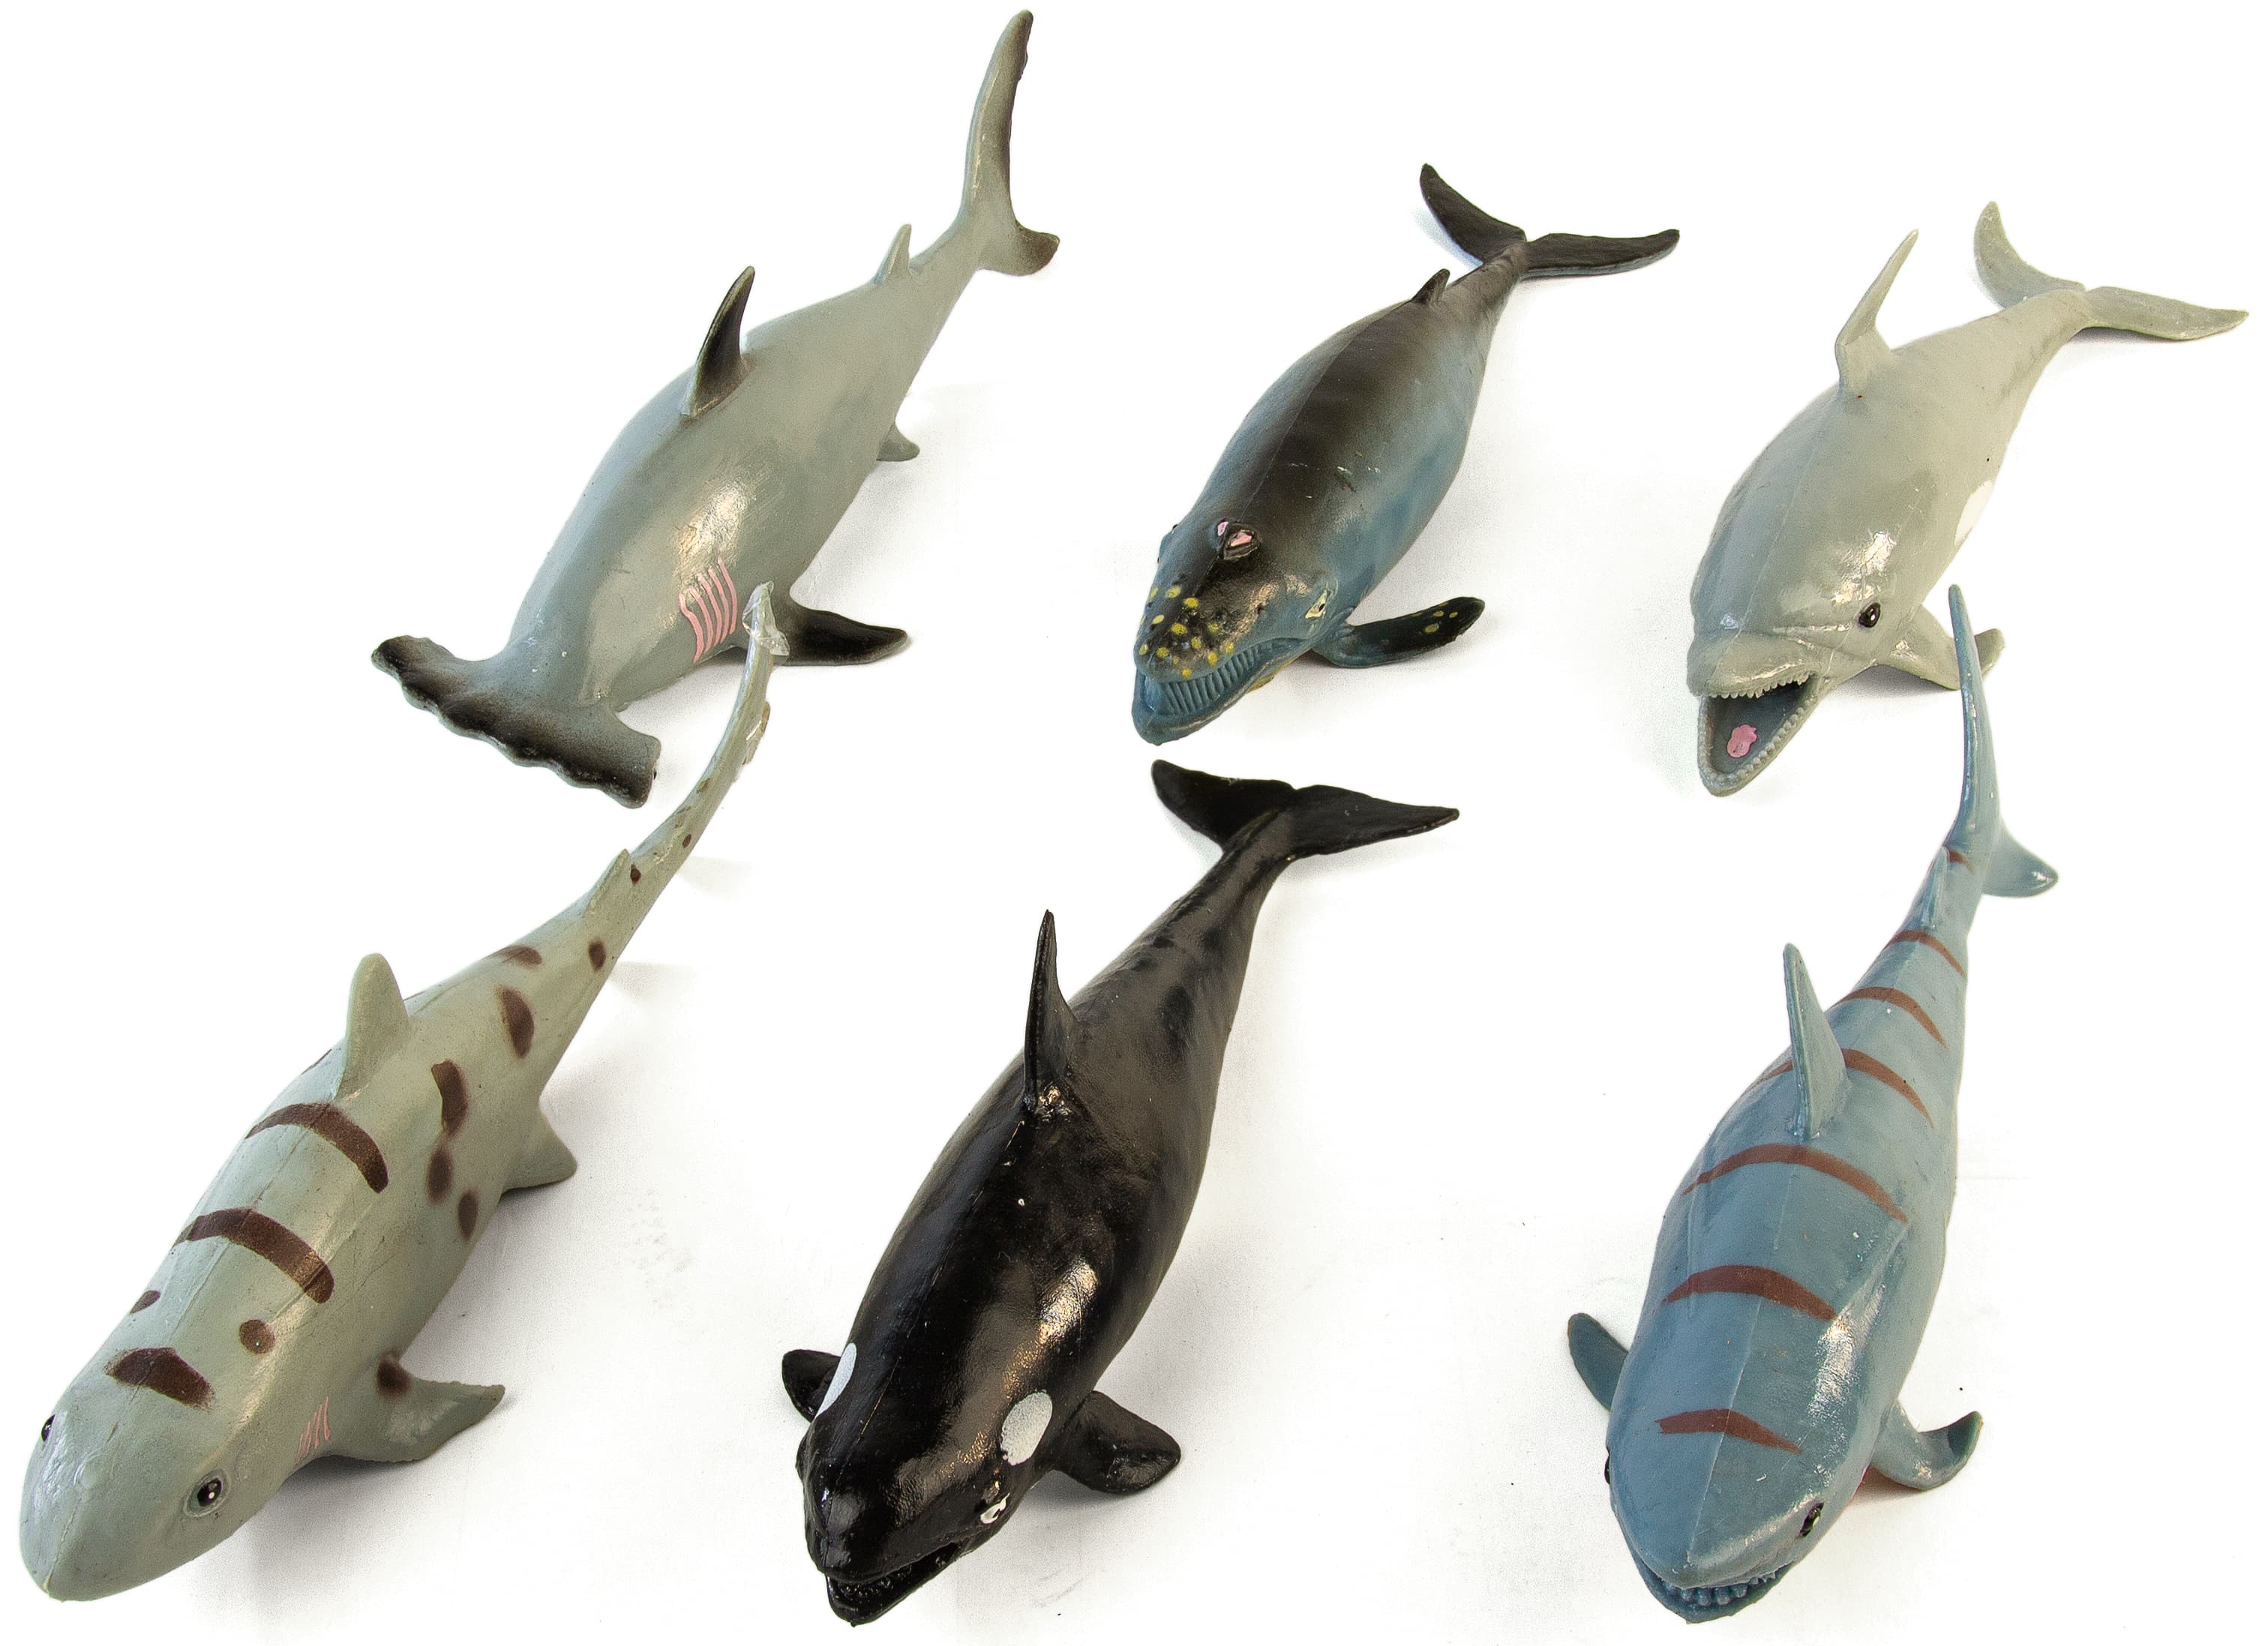 Игрушки резиновые фигурки-тянучки «Морские обитатели» A01, 17-20 см. Антистресс / 6 шт.